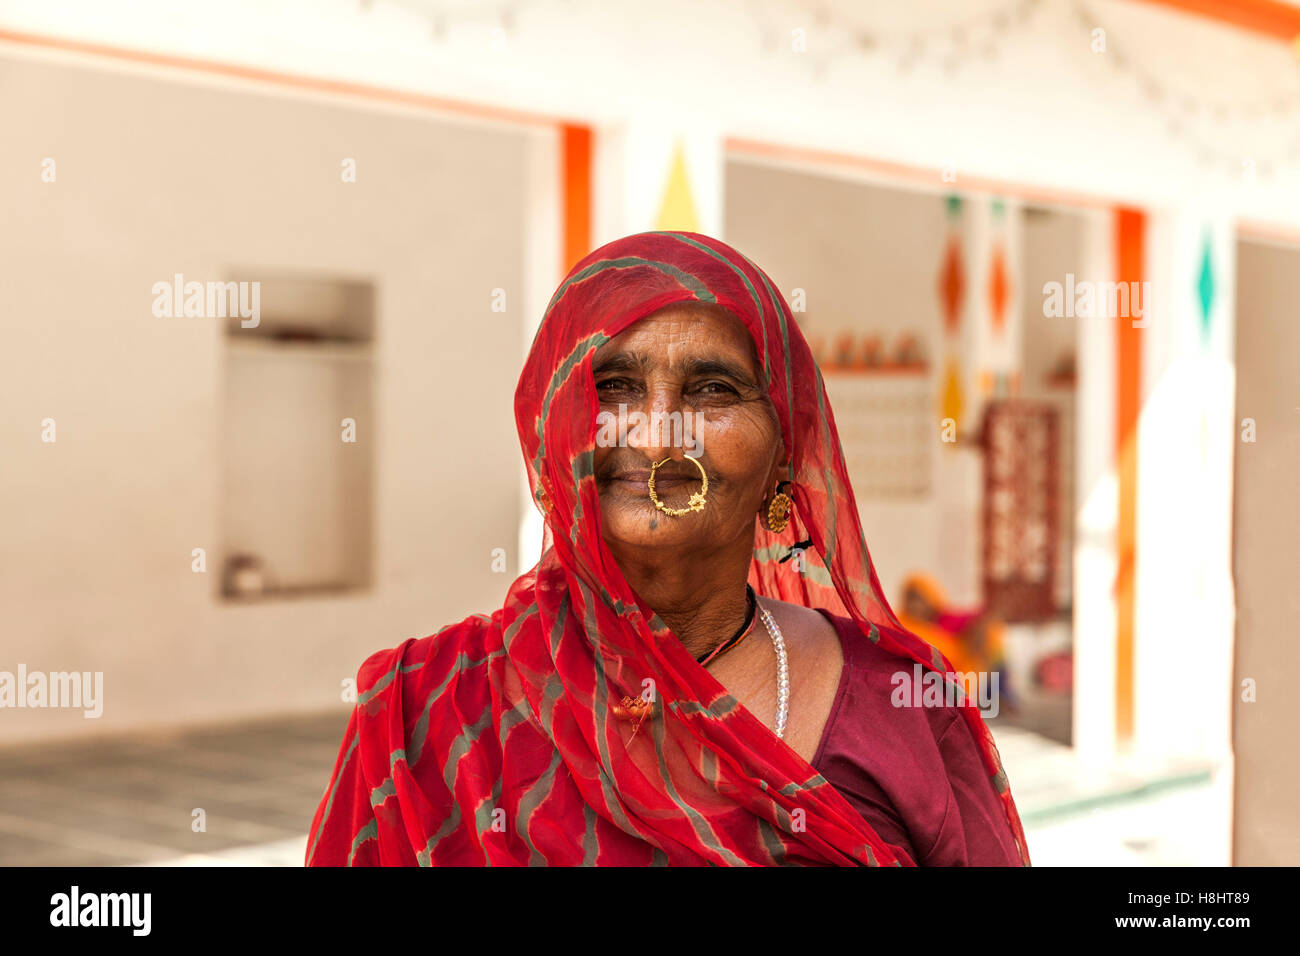 Rajasthani woman Stock Photo